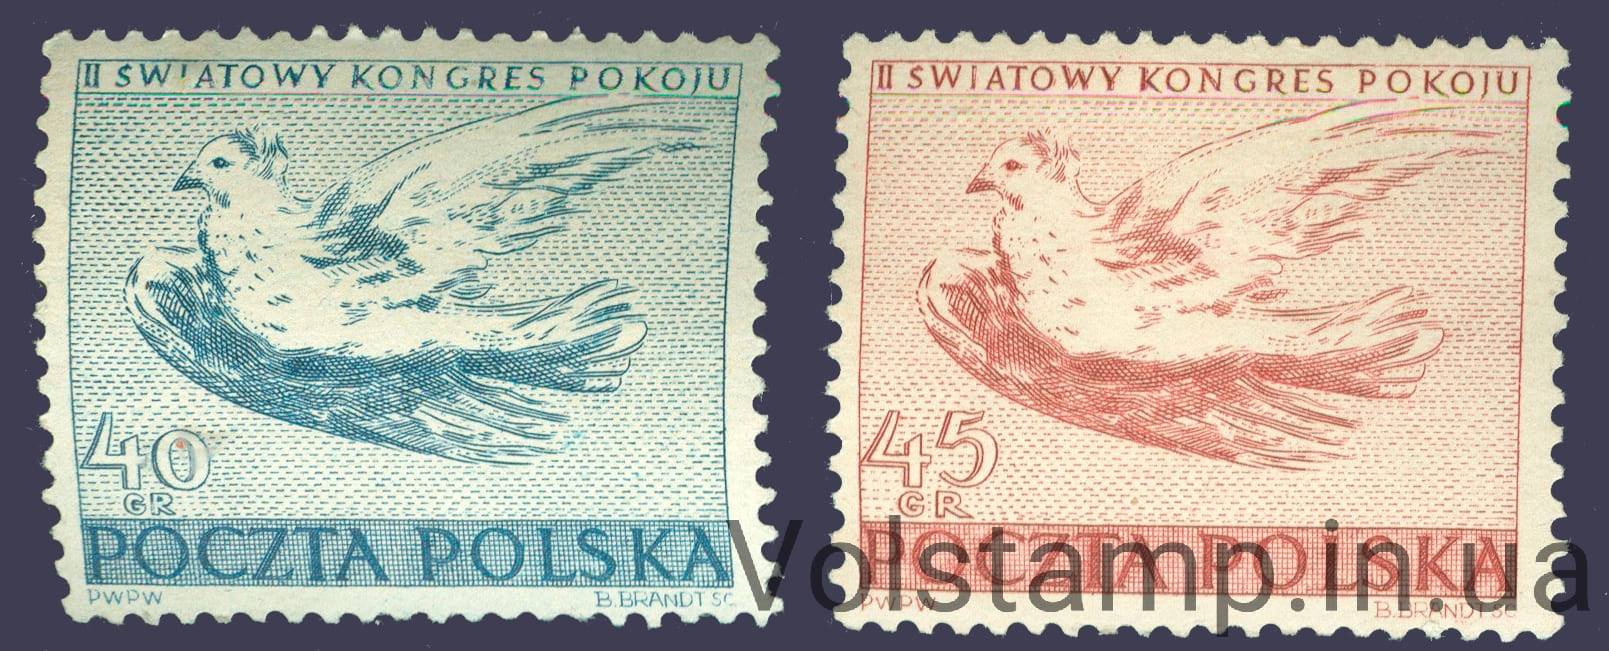 1950 Польша Серия марок (Птицы, голуби) MNH №668-669